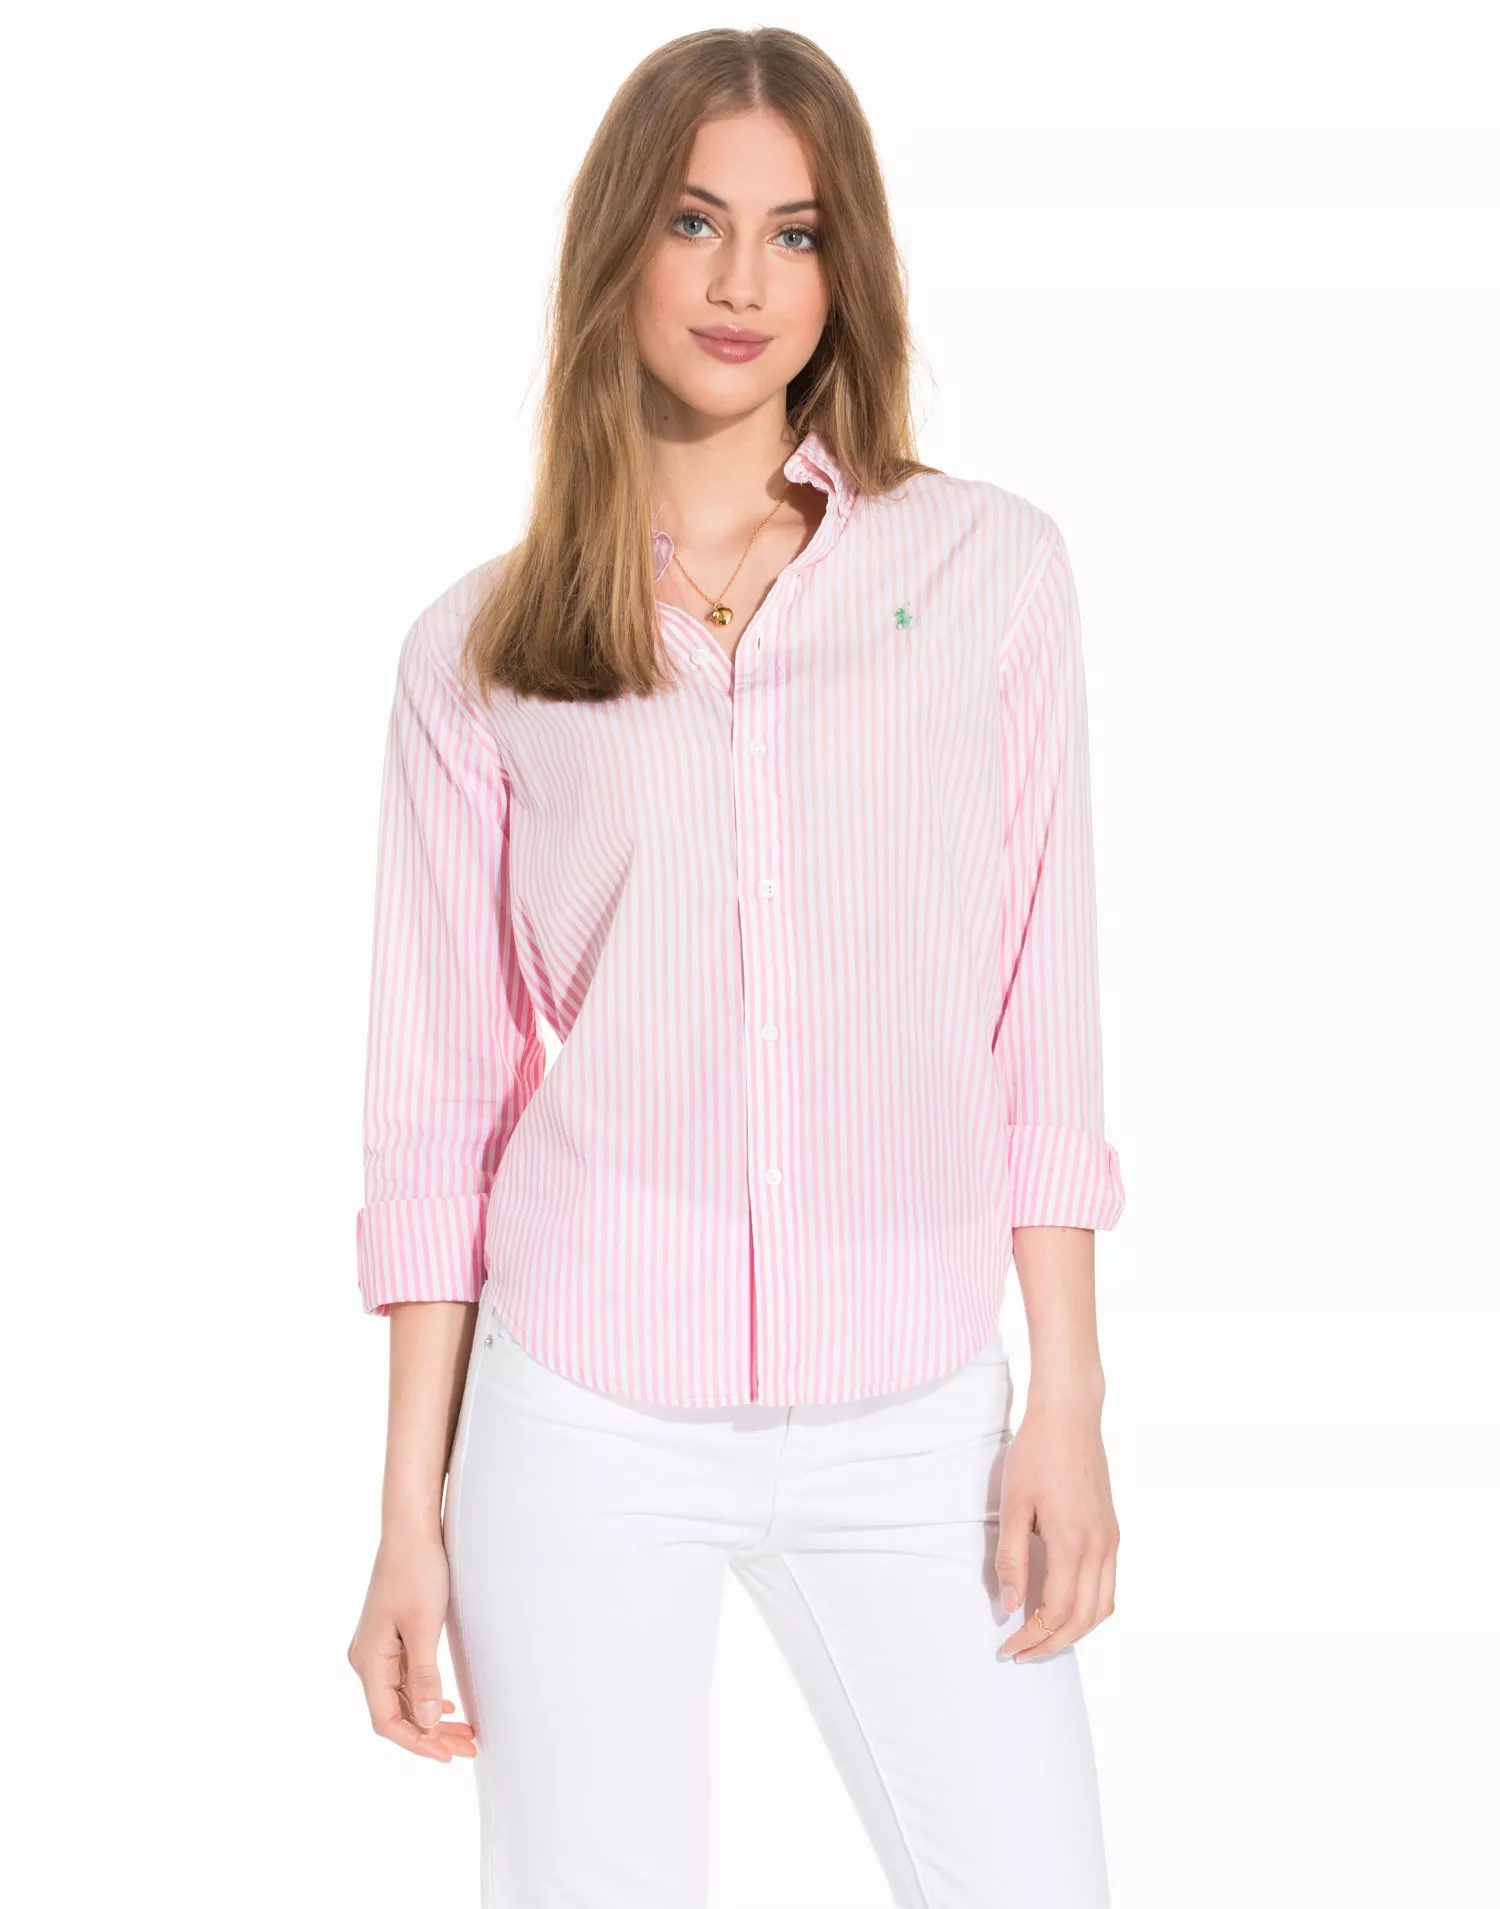 Osta Polo Ralph Lauren LS Relaxed Ev Shirt - Soft Pink 